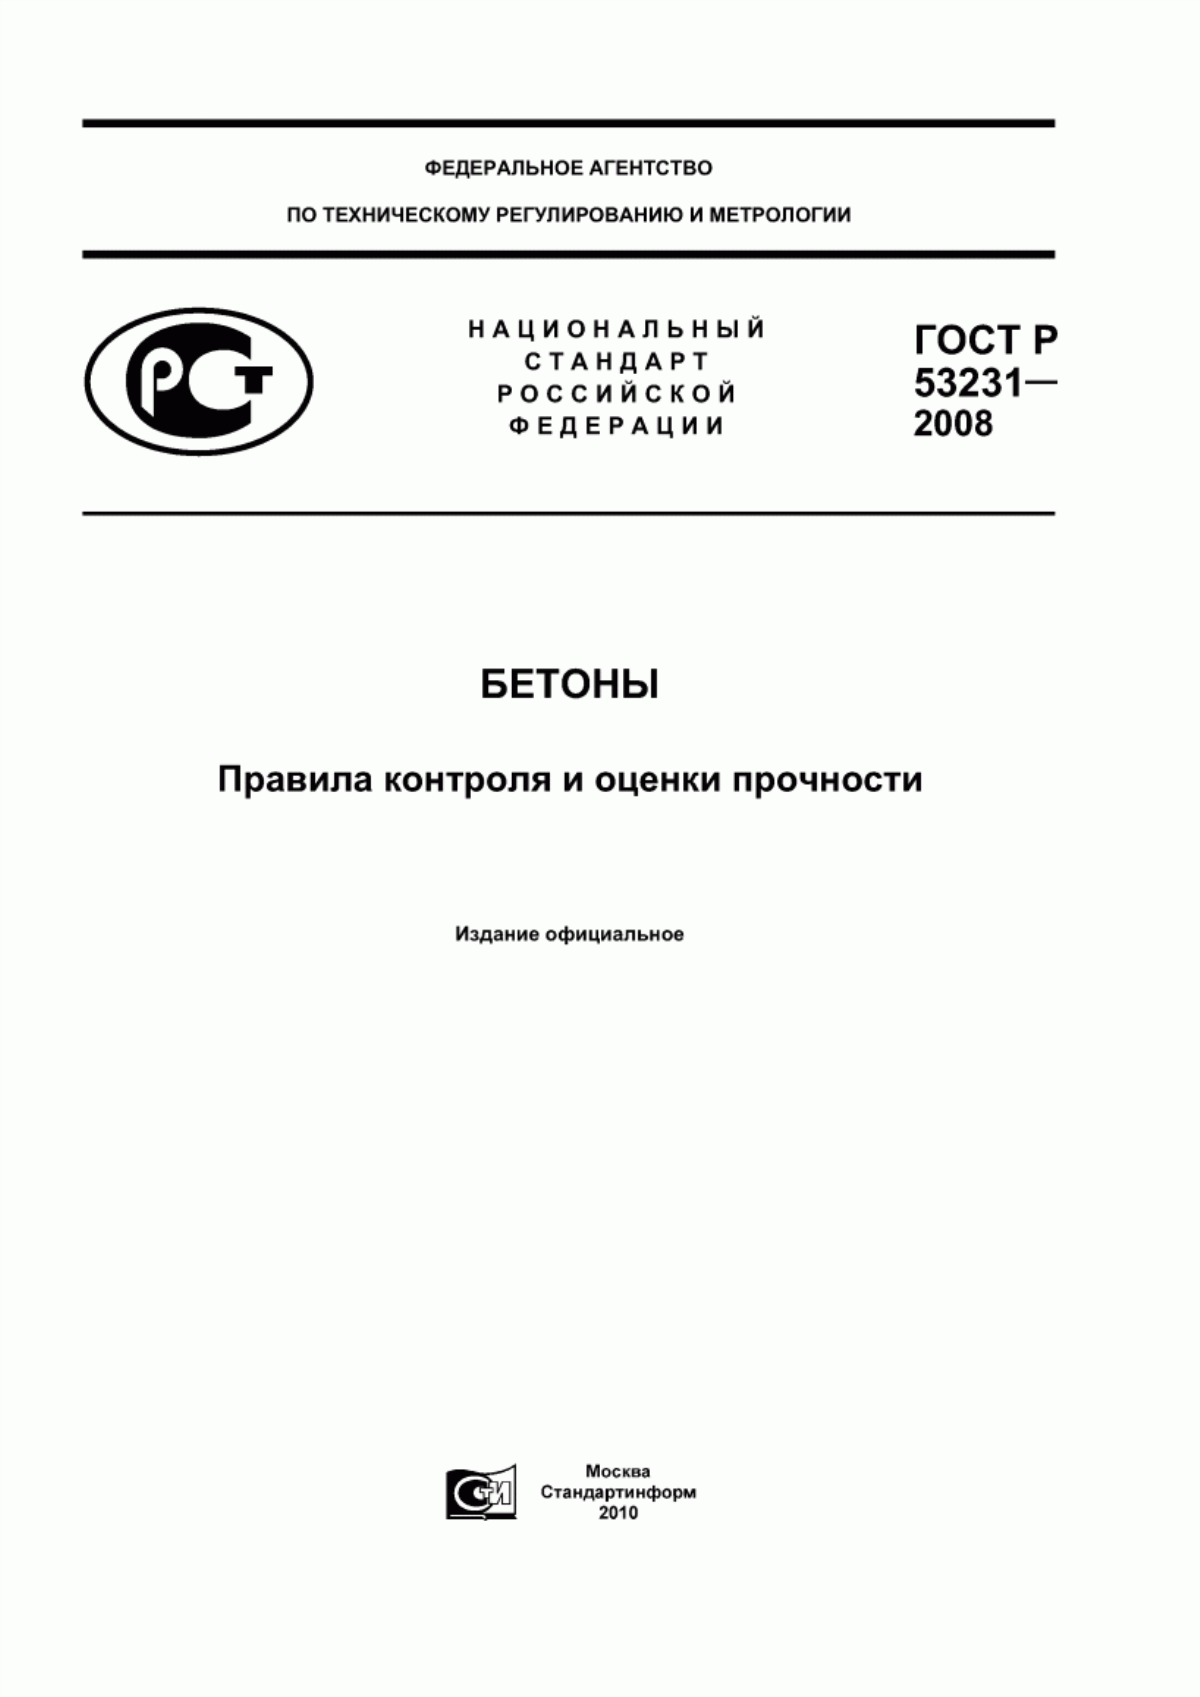 ГОСТ Р 53231-2008 Бетоны. Правила контроля и оценки прочности